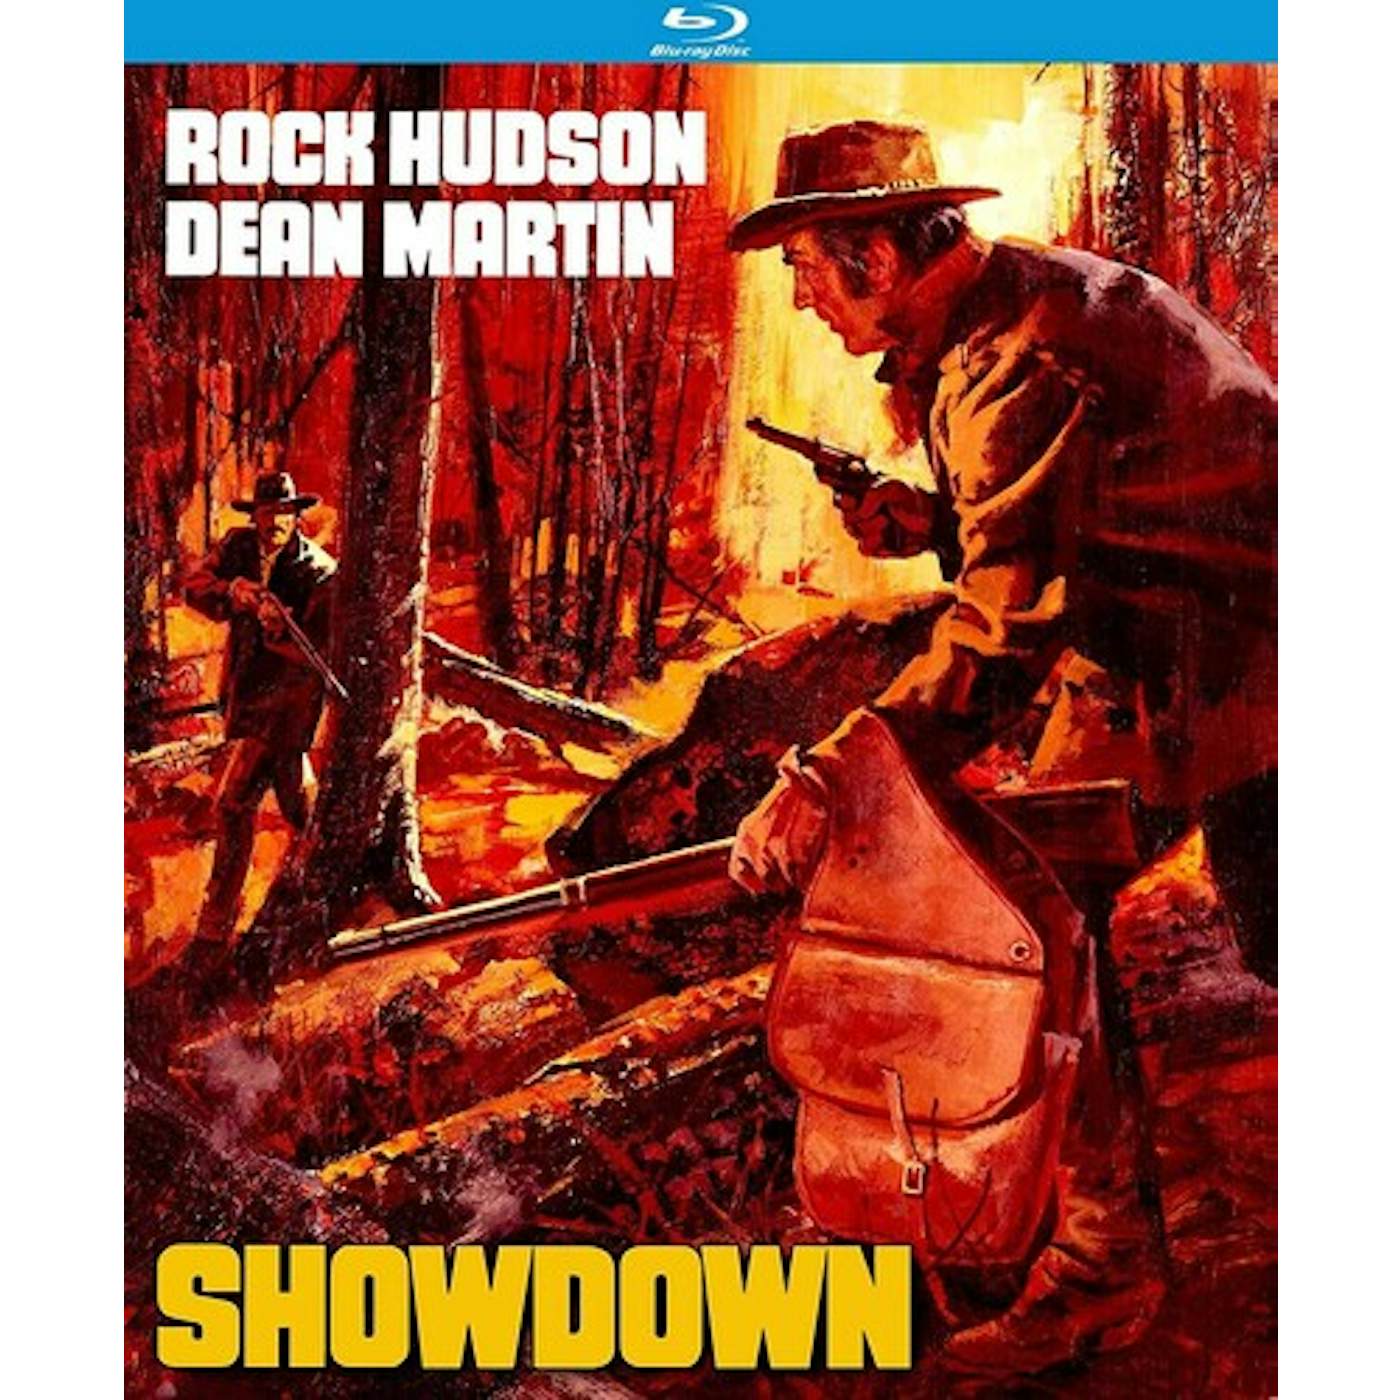 The Showdown (1973) Blu-ray